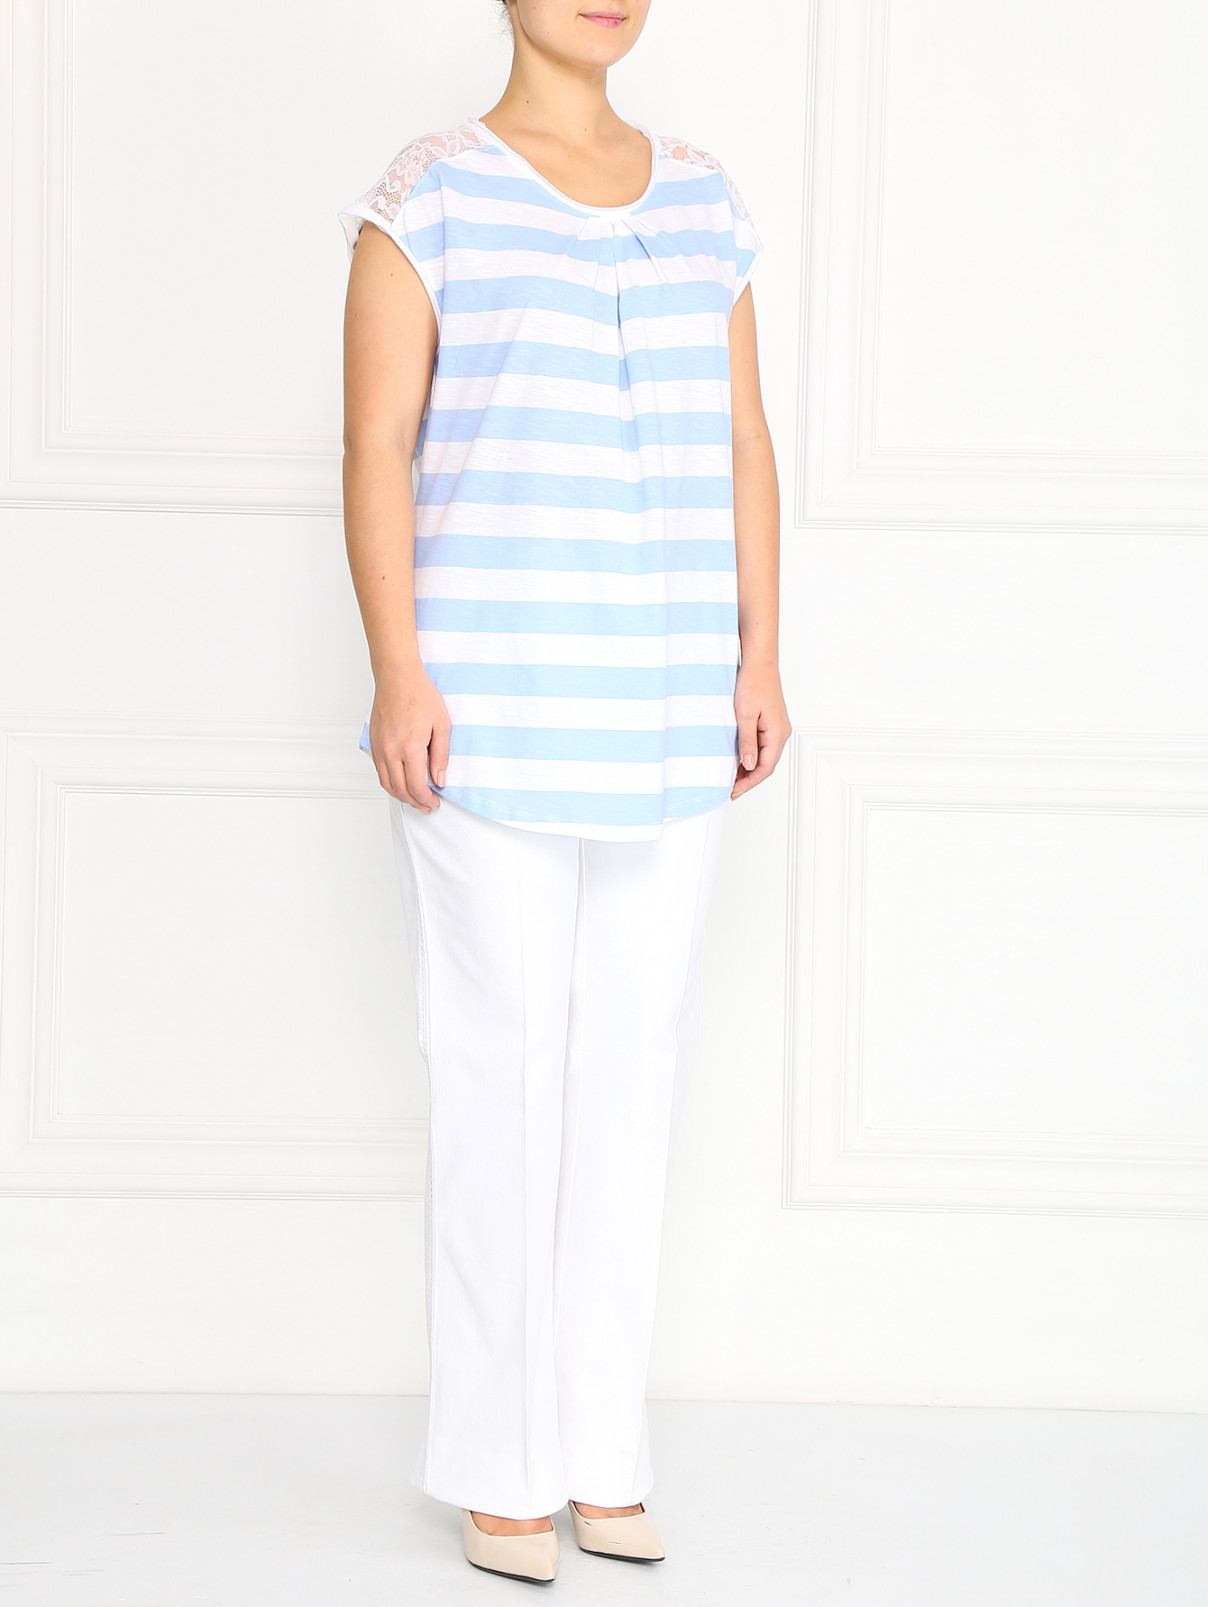 Расклешенные джинсы с декоративной прострочкой Marina Rinaldi  –  Модель Общий вид  – Цвет:  Белый